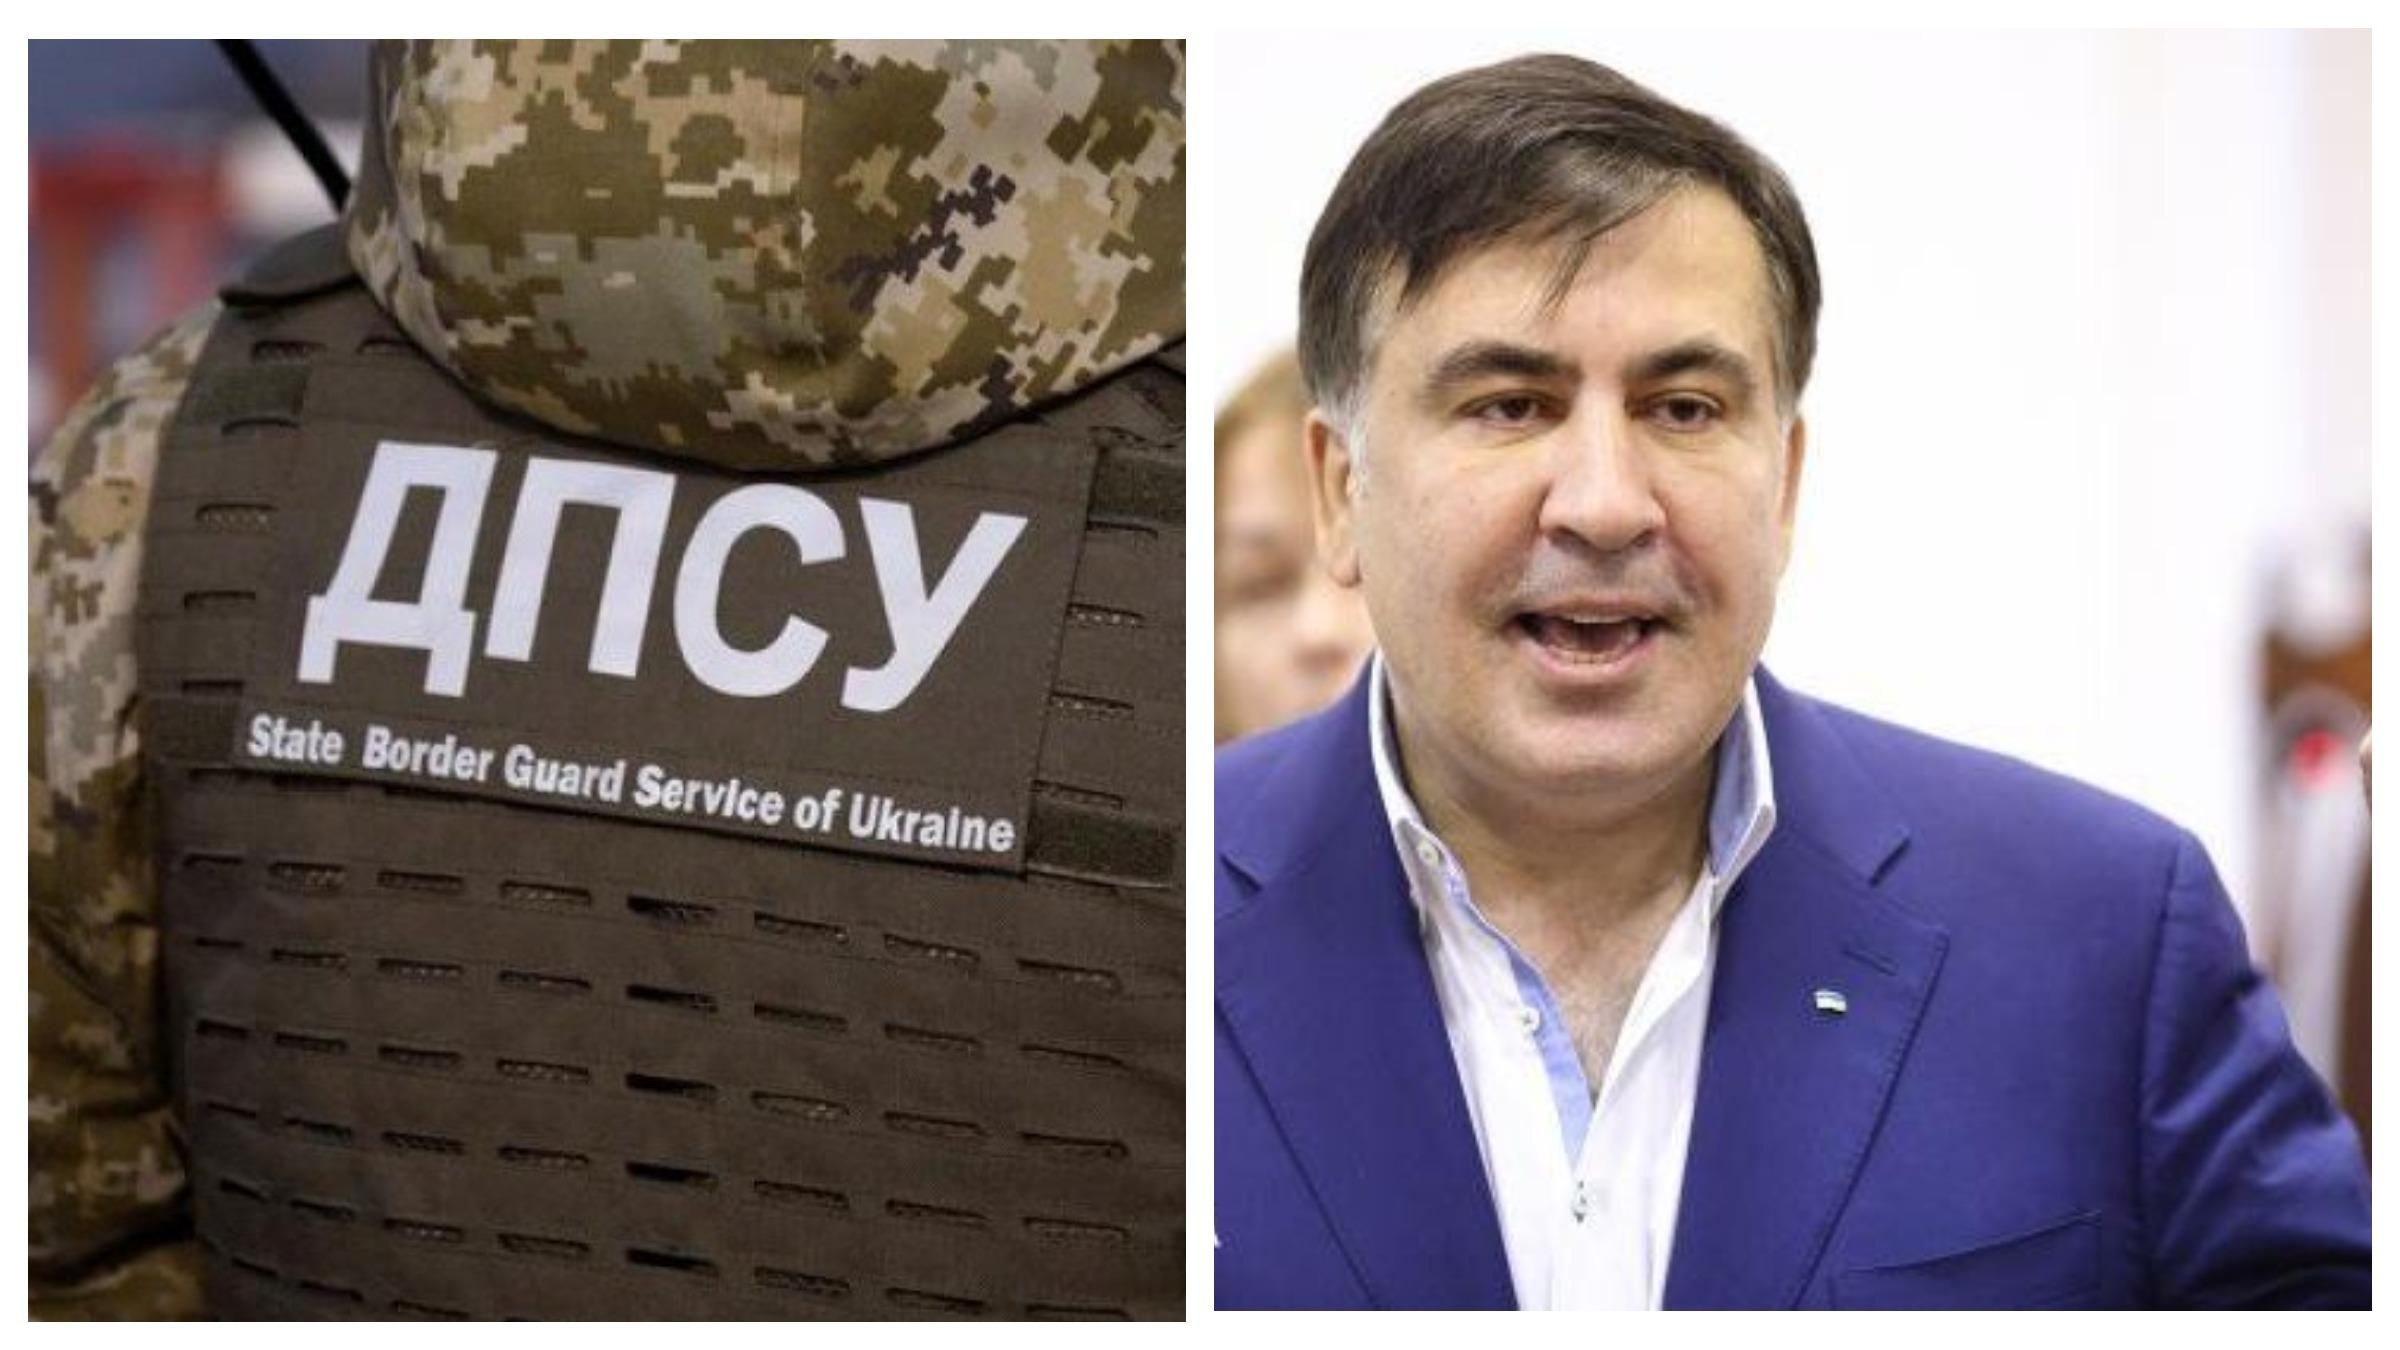 Выезд Саакашвили из Украины: ГПСУ проводит расследование, некоторых чиновников отстранили